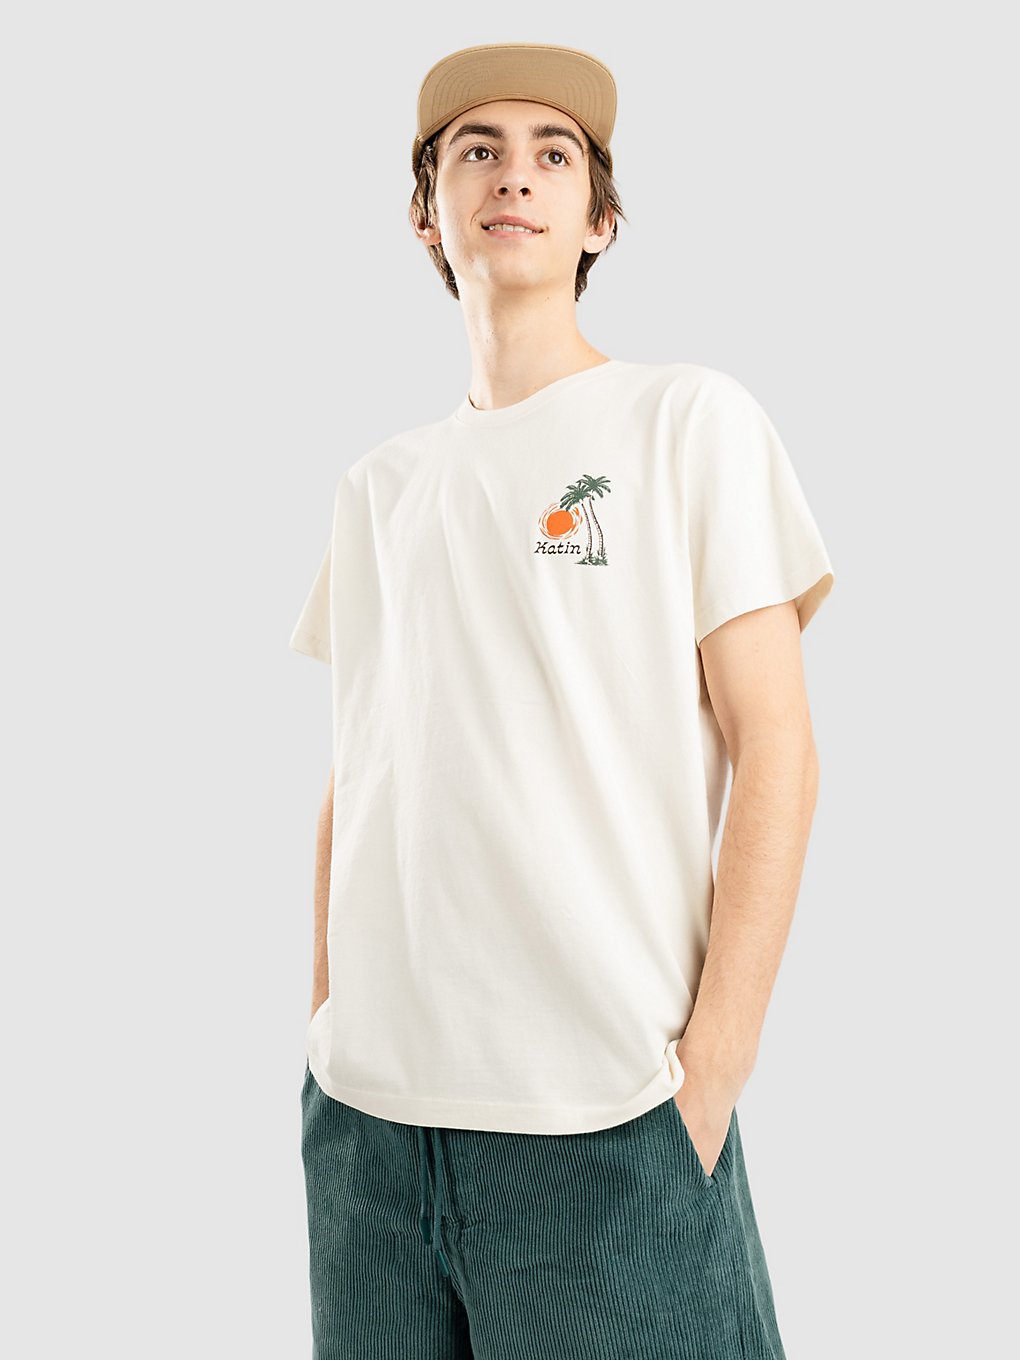 Katin USA Baja T-Shirt vintage white kaufen